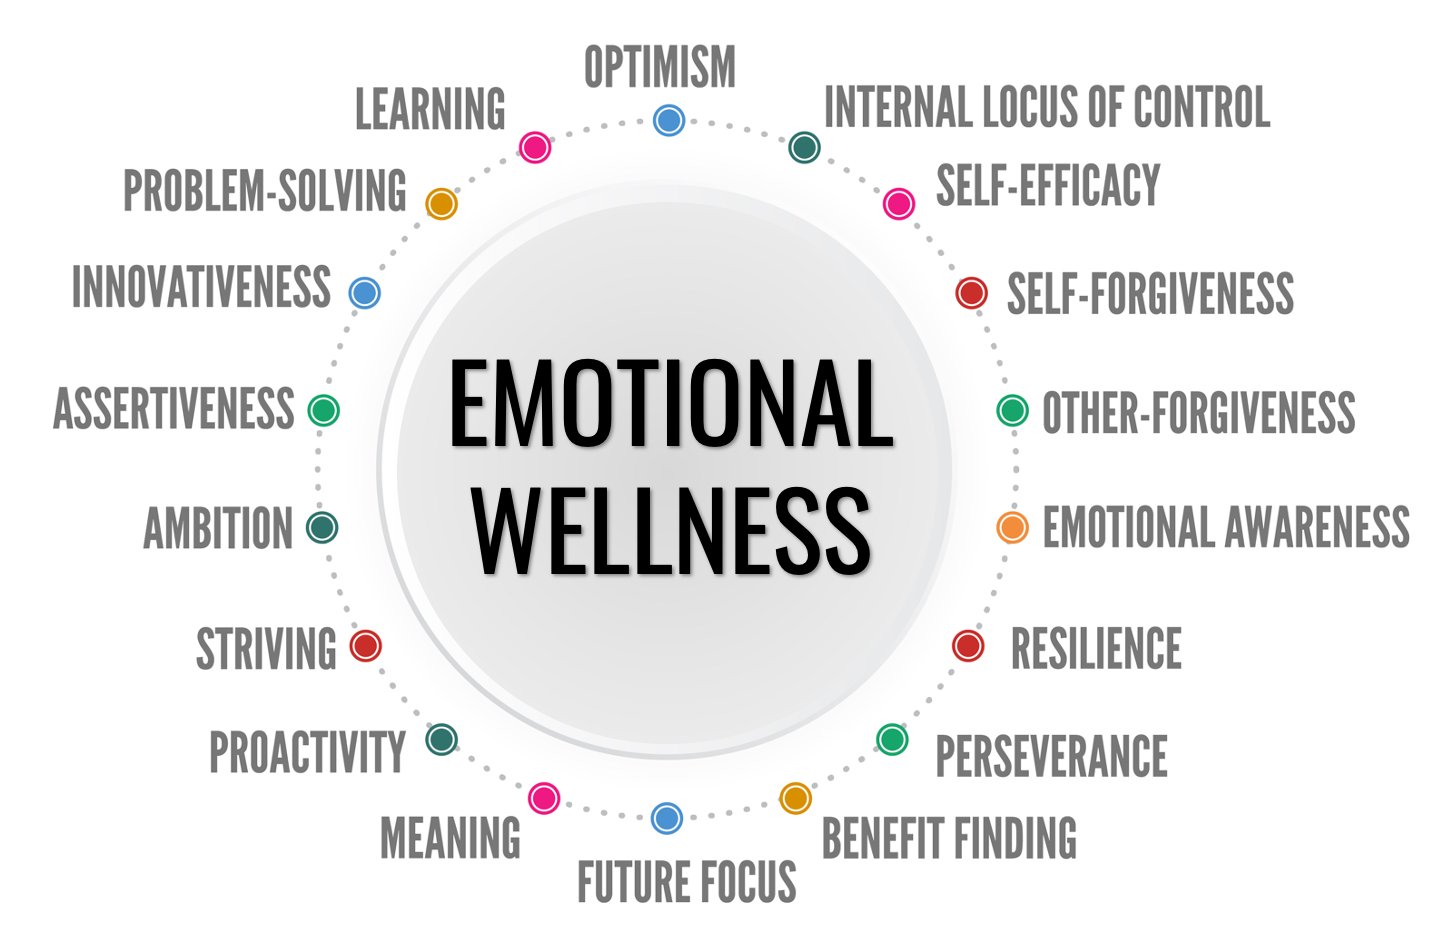 Emotional wellness